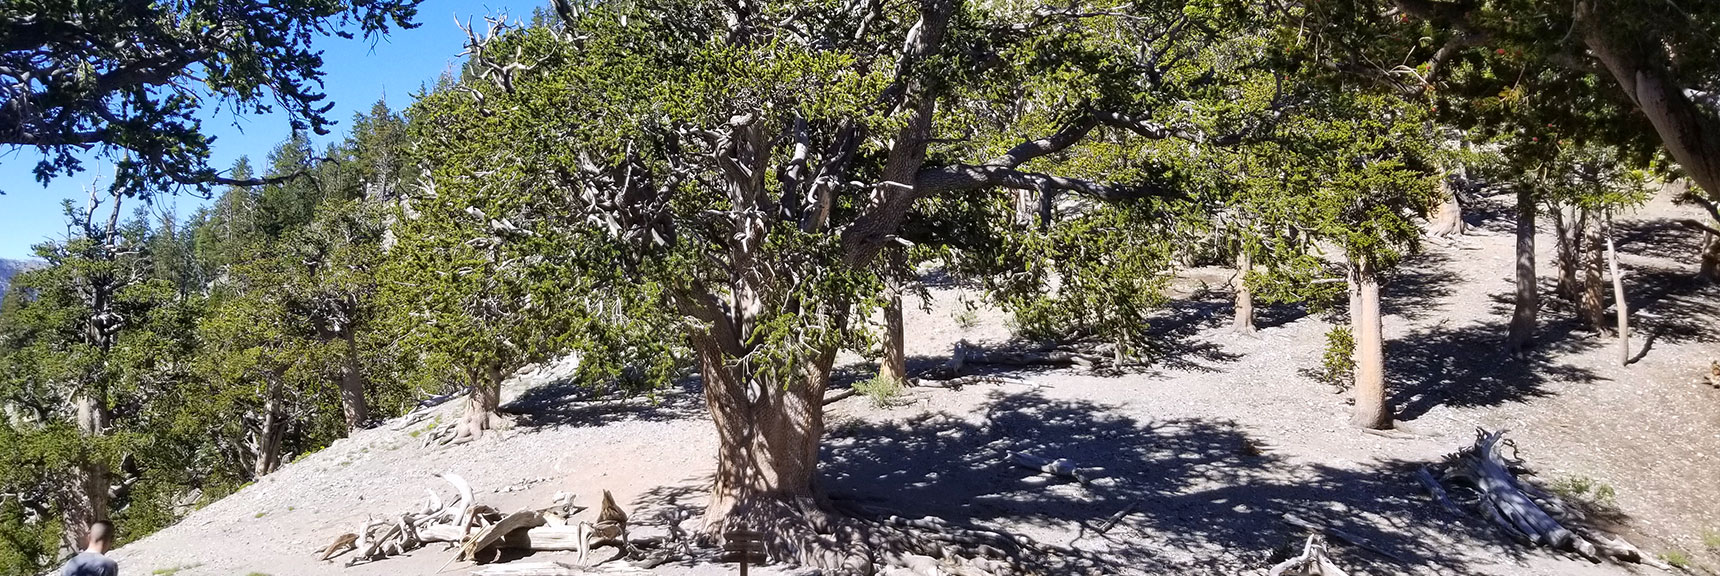 3000 Year-Old Rain Tree on North Loop Trail to Charleston Peak